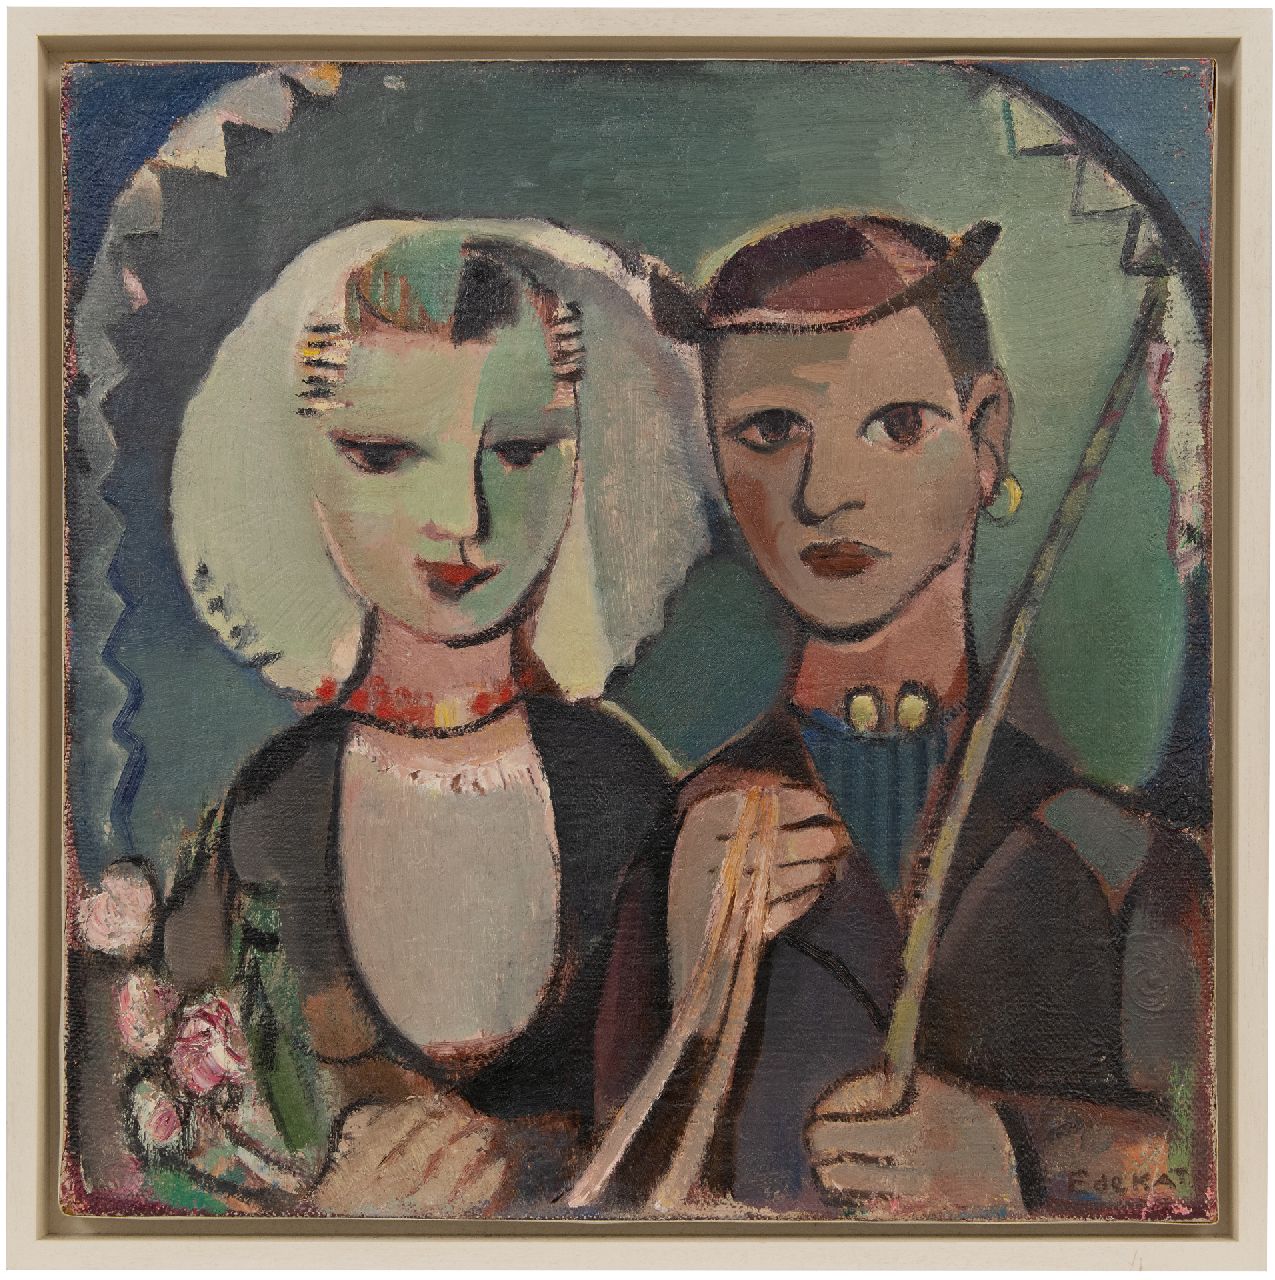 Kat E. de | Ewoud de Kat | Paintings offered for sale | Wedding couple in Zeeland costume, oil on canvas 60.3 x 60.6 cm, signed l.r.